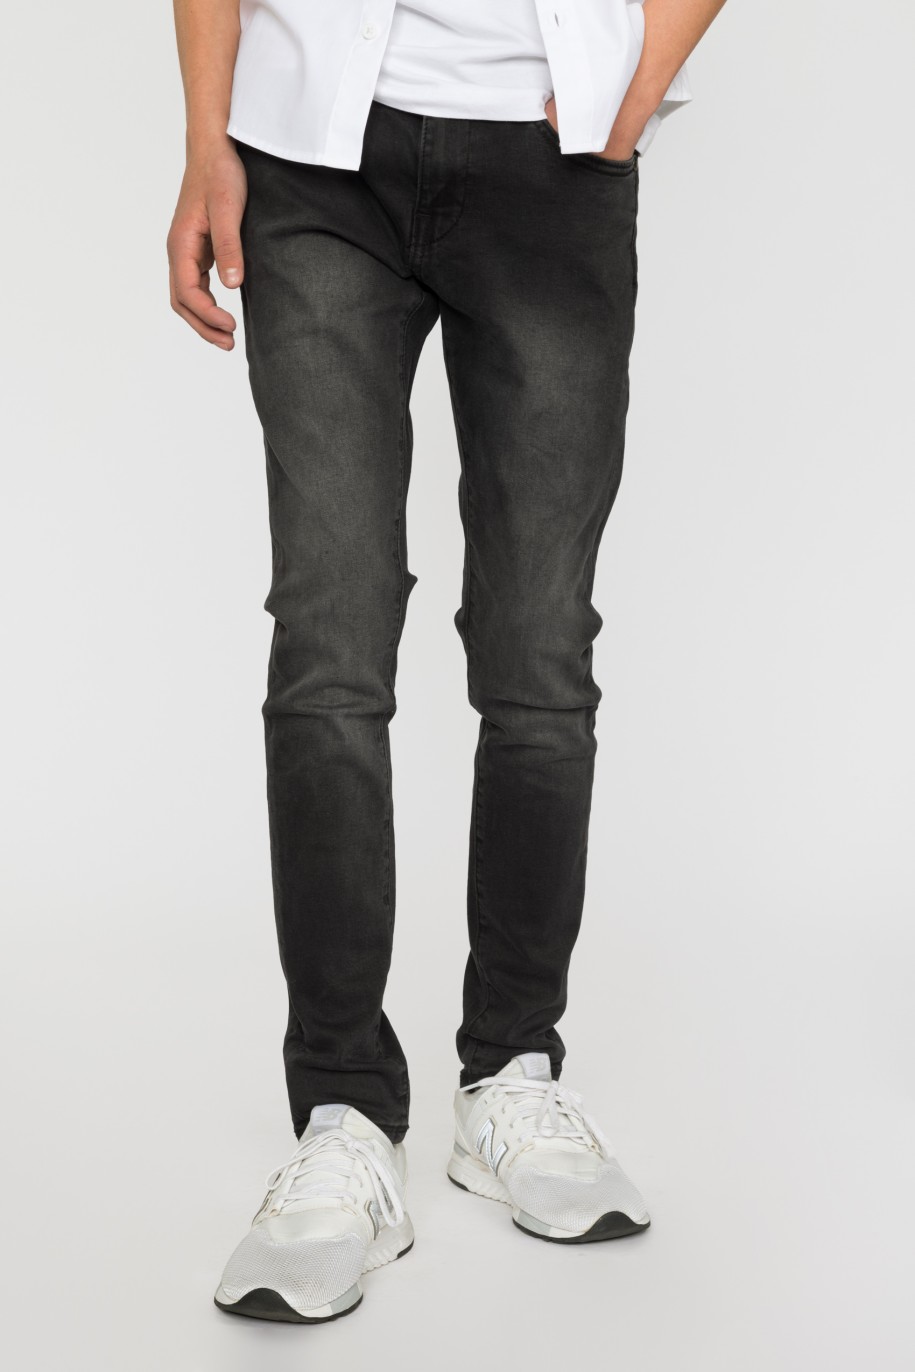 Czarne Jeansowe spodnie dla chłopaka REGURAL - 33438